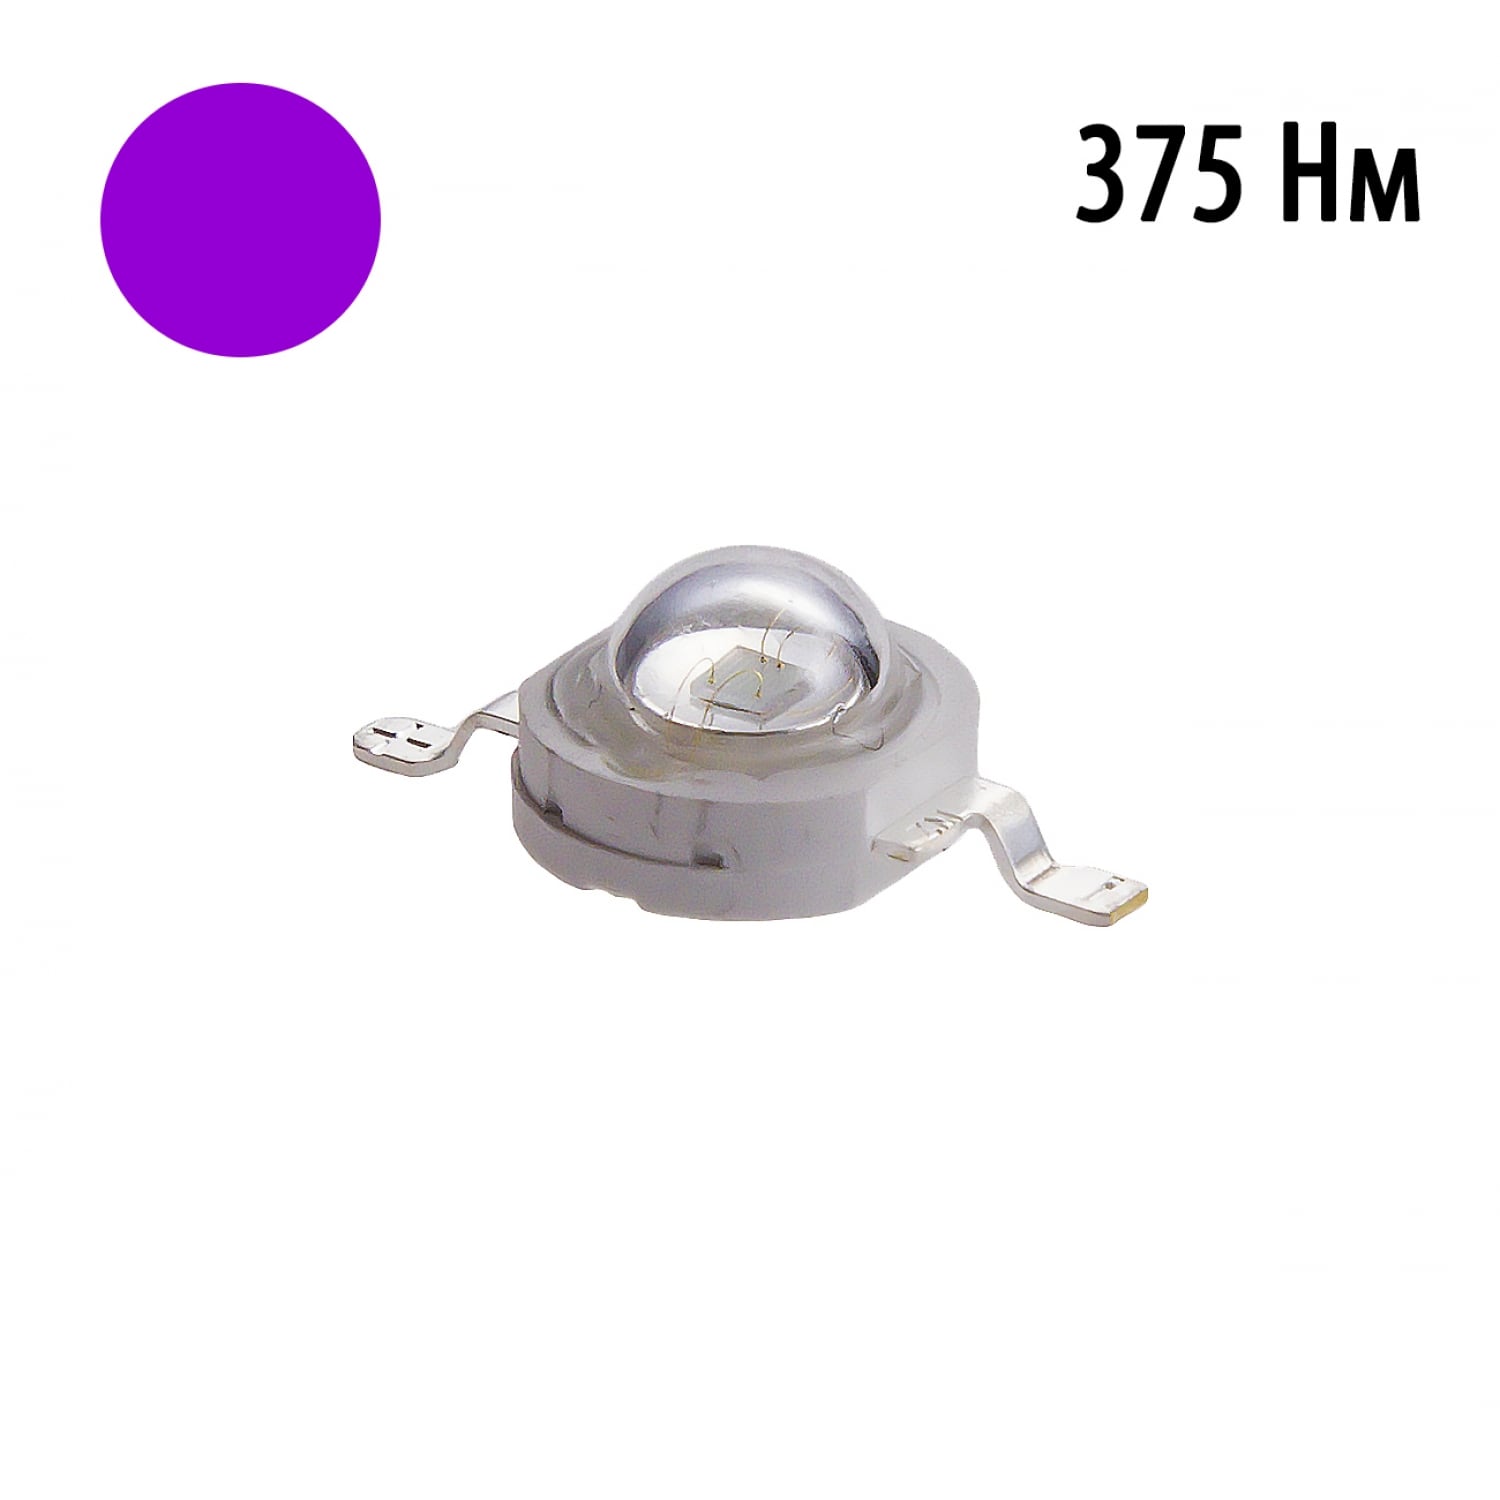 Фито светодиод 3 Вт UV 370-375 нм. (ультра-фиолет)